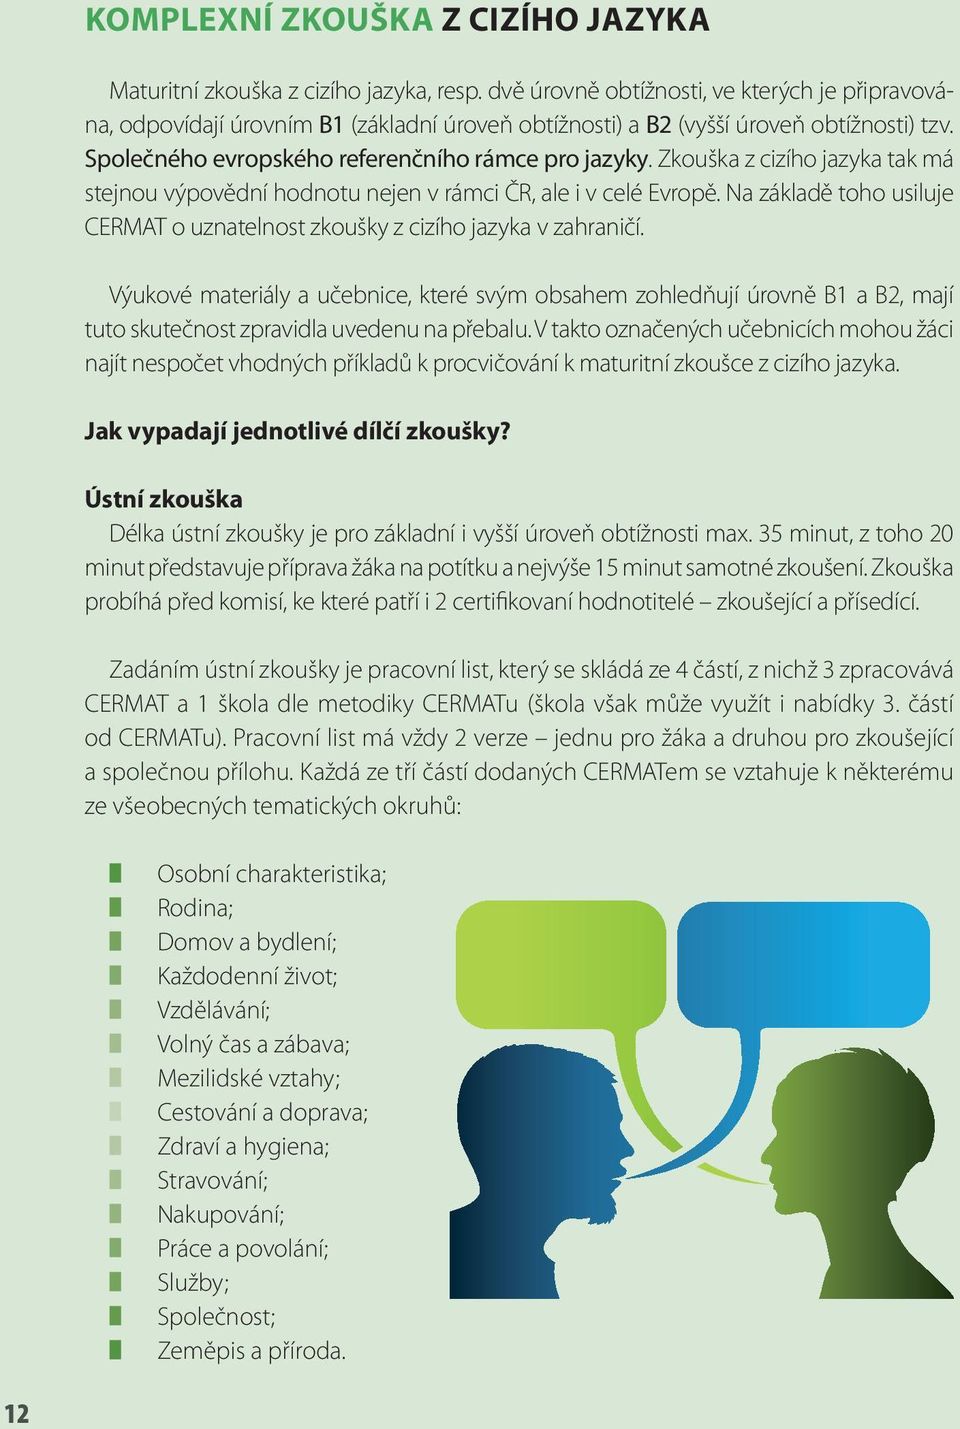 Zkouška z cizího jazyka tak má stejnou výpovědní hodnotu nejen v rámci ČR, ale i v celé Evropě. Na základě toho usiluje CERMAT o uznatelnost zkoušky z cizího jazyka v zahraničí.